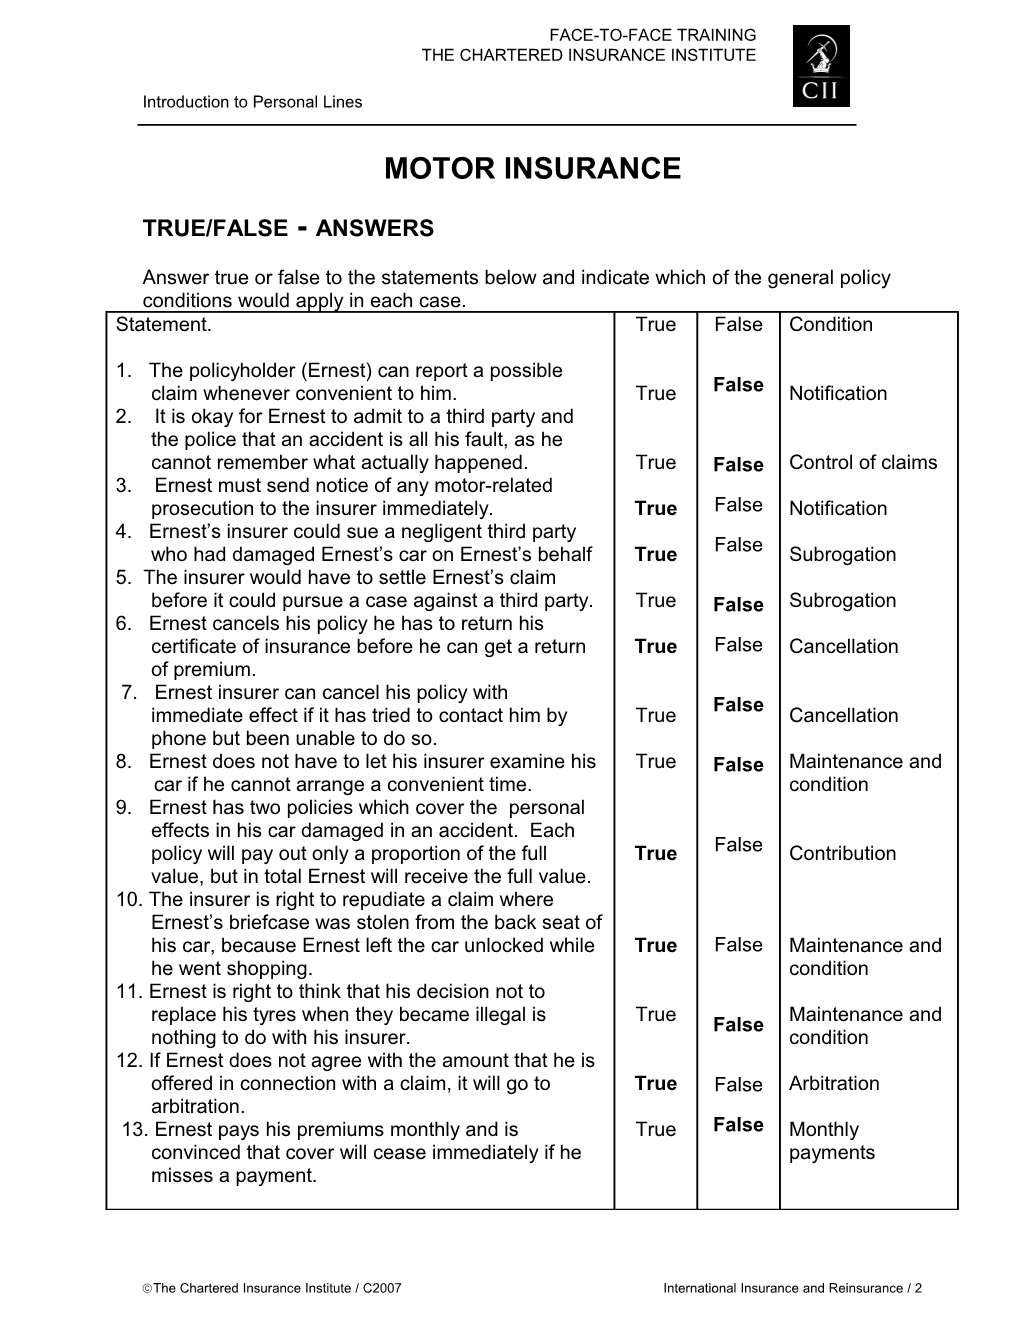 Module Five Motor Insurance